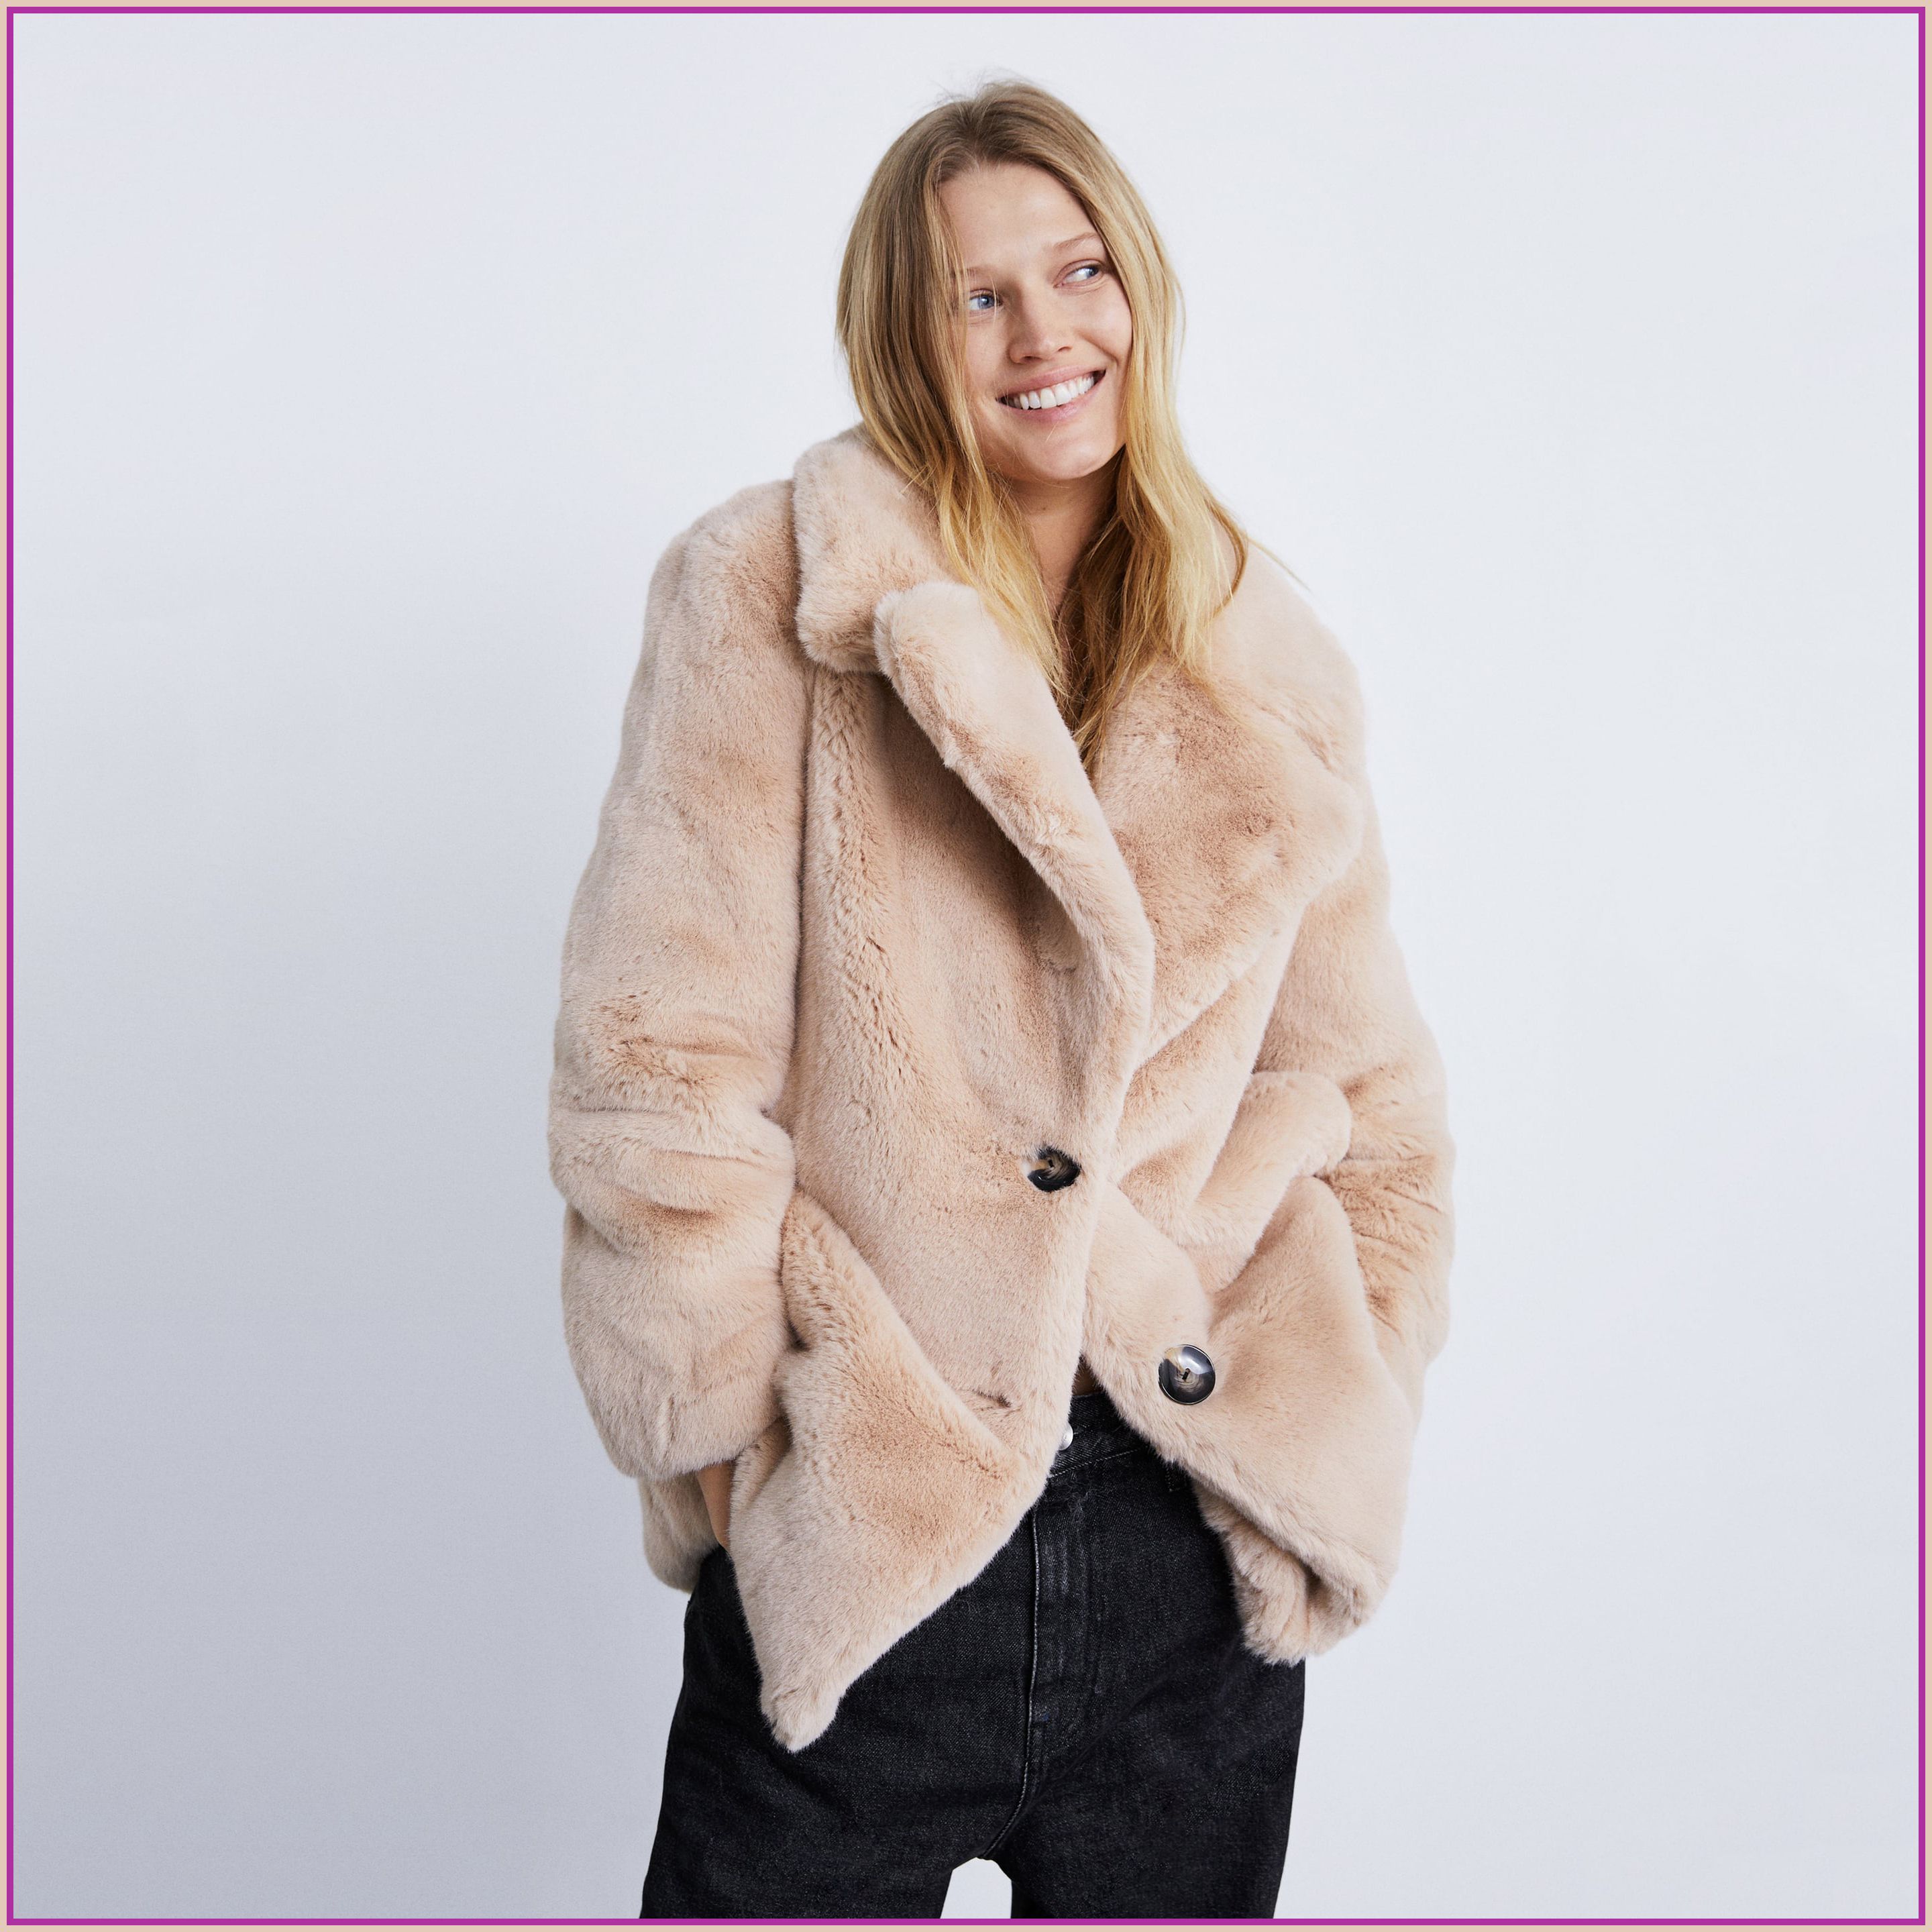 industria Enriquecimiento Fortaleza Este es el abrigo de pelo más calentito y ponible de Zara - Zara tiene el  abrigo de pelo rosa más bonito